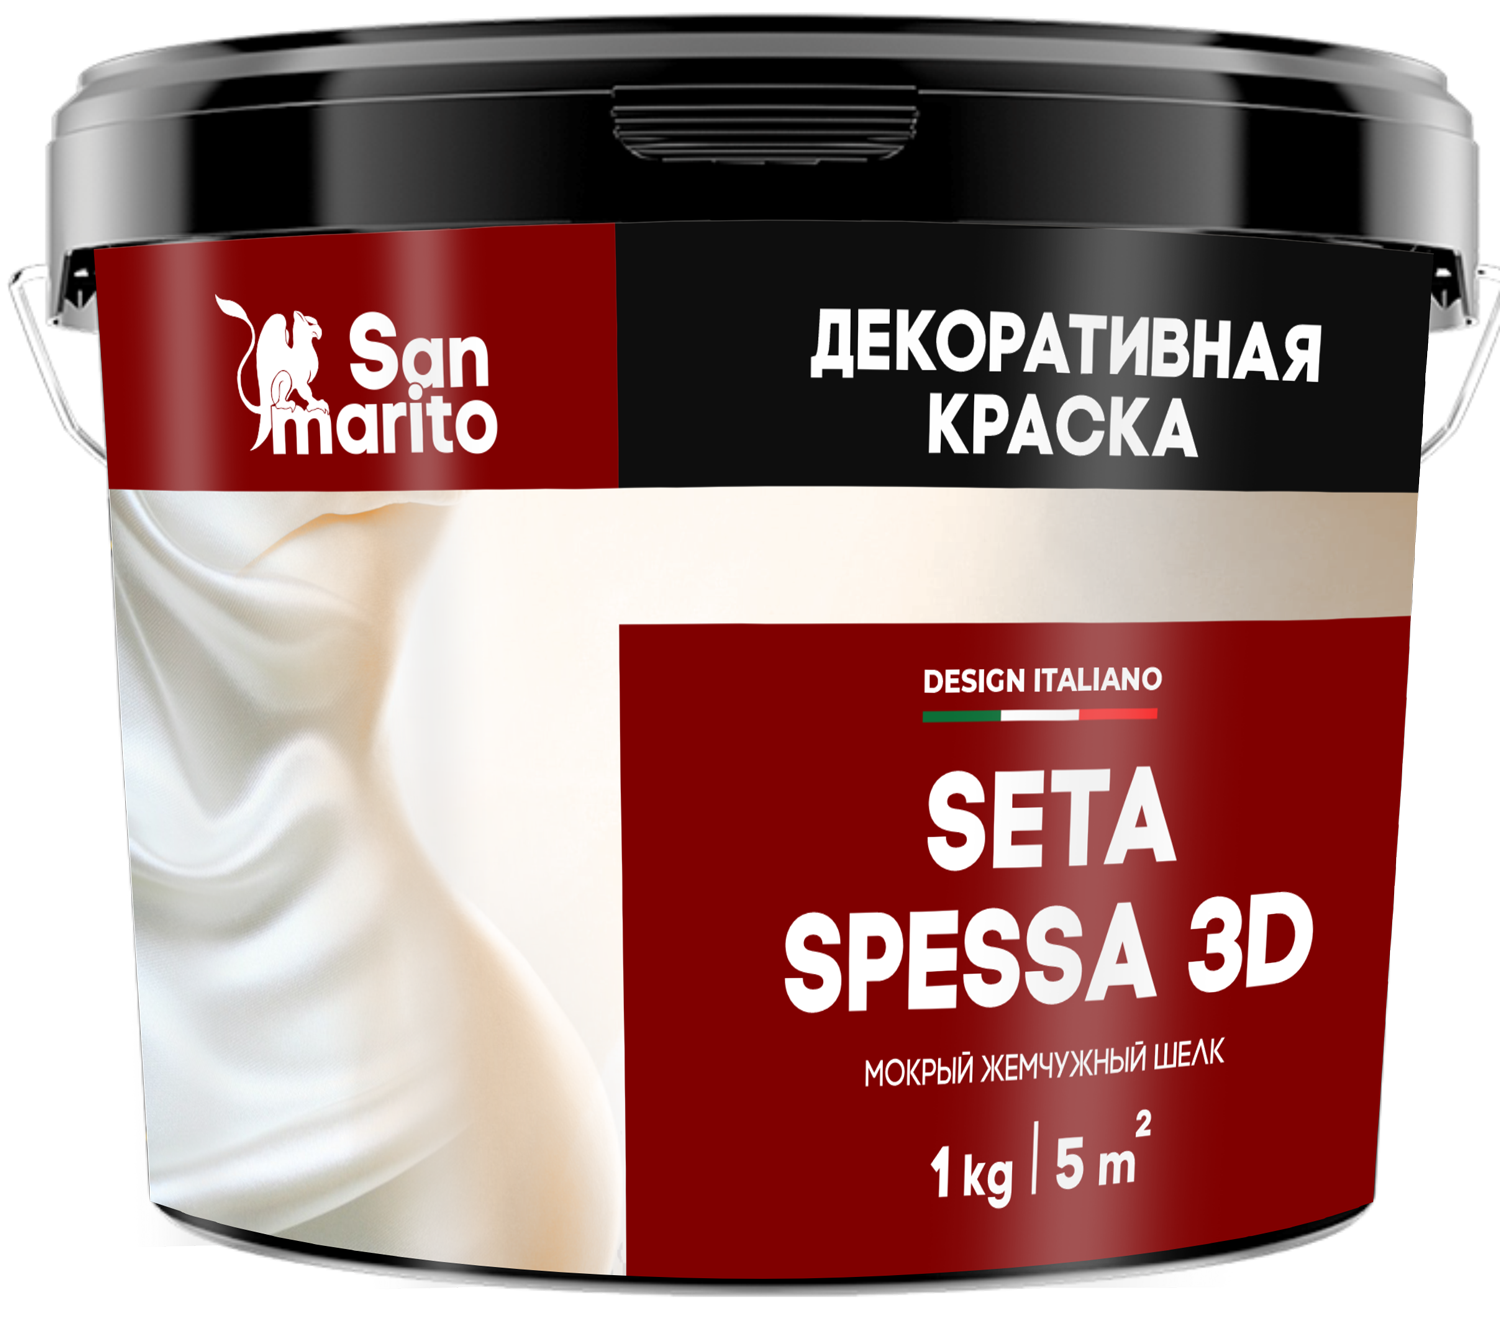 Краска декоративная с эффектом мокрого жемчужного шелка "San Marito Seta Spessa 3D" 3кг